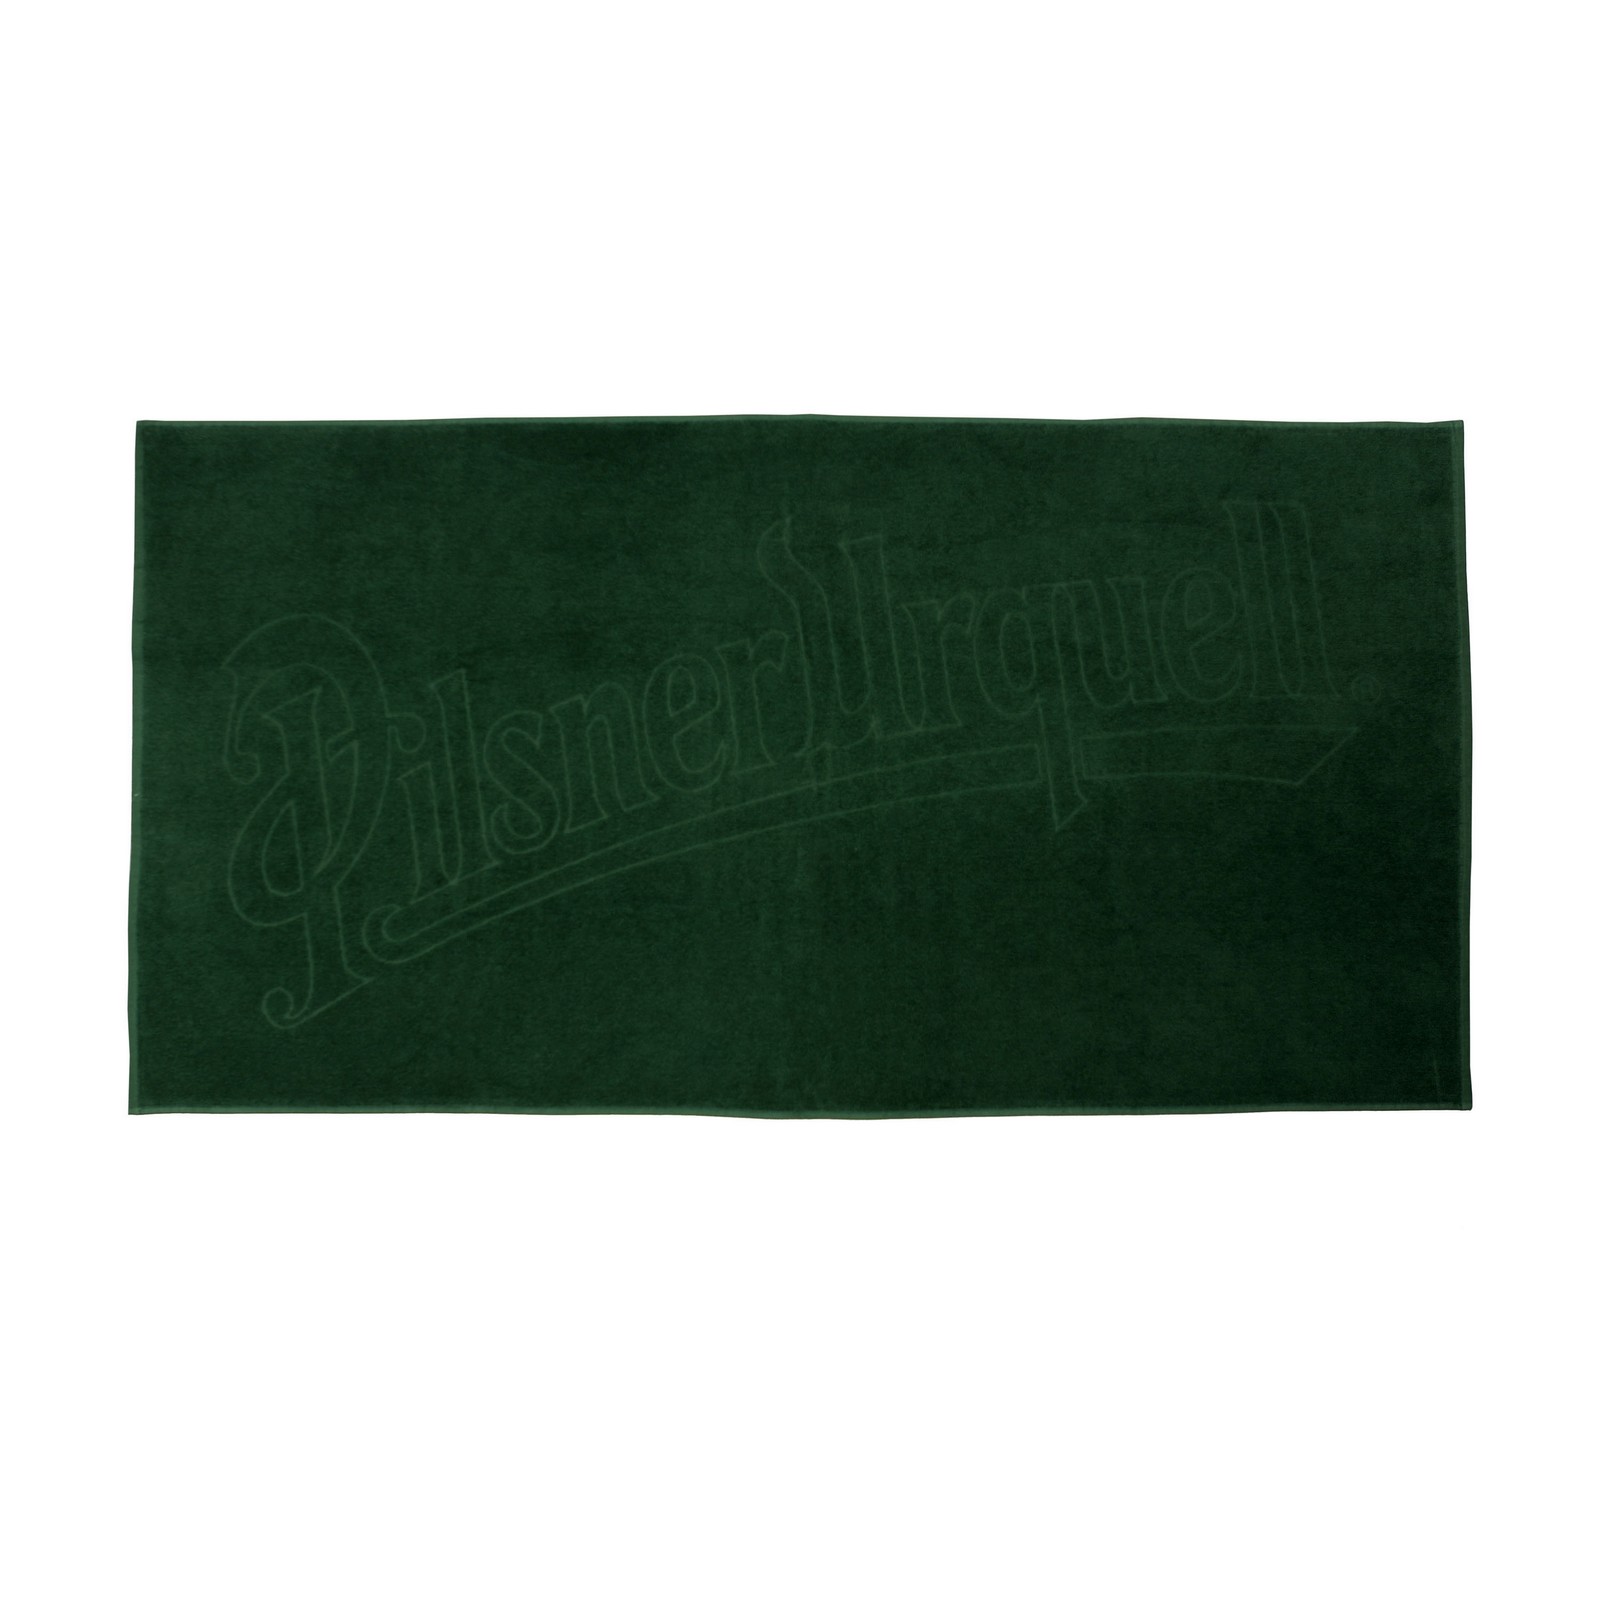 Pilsner Urquell towel - green